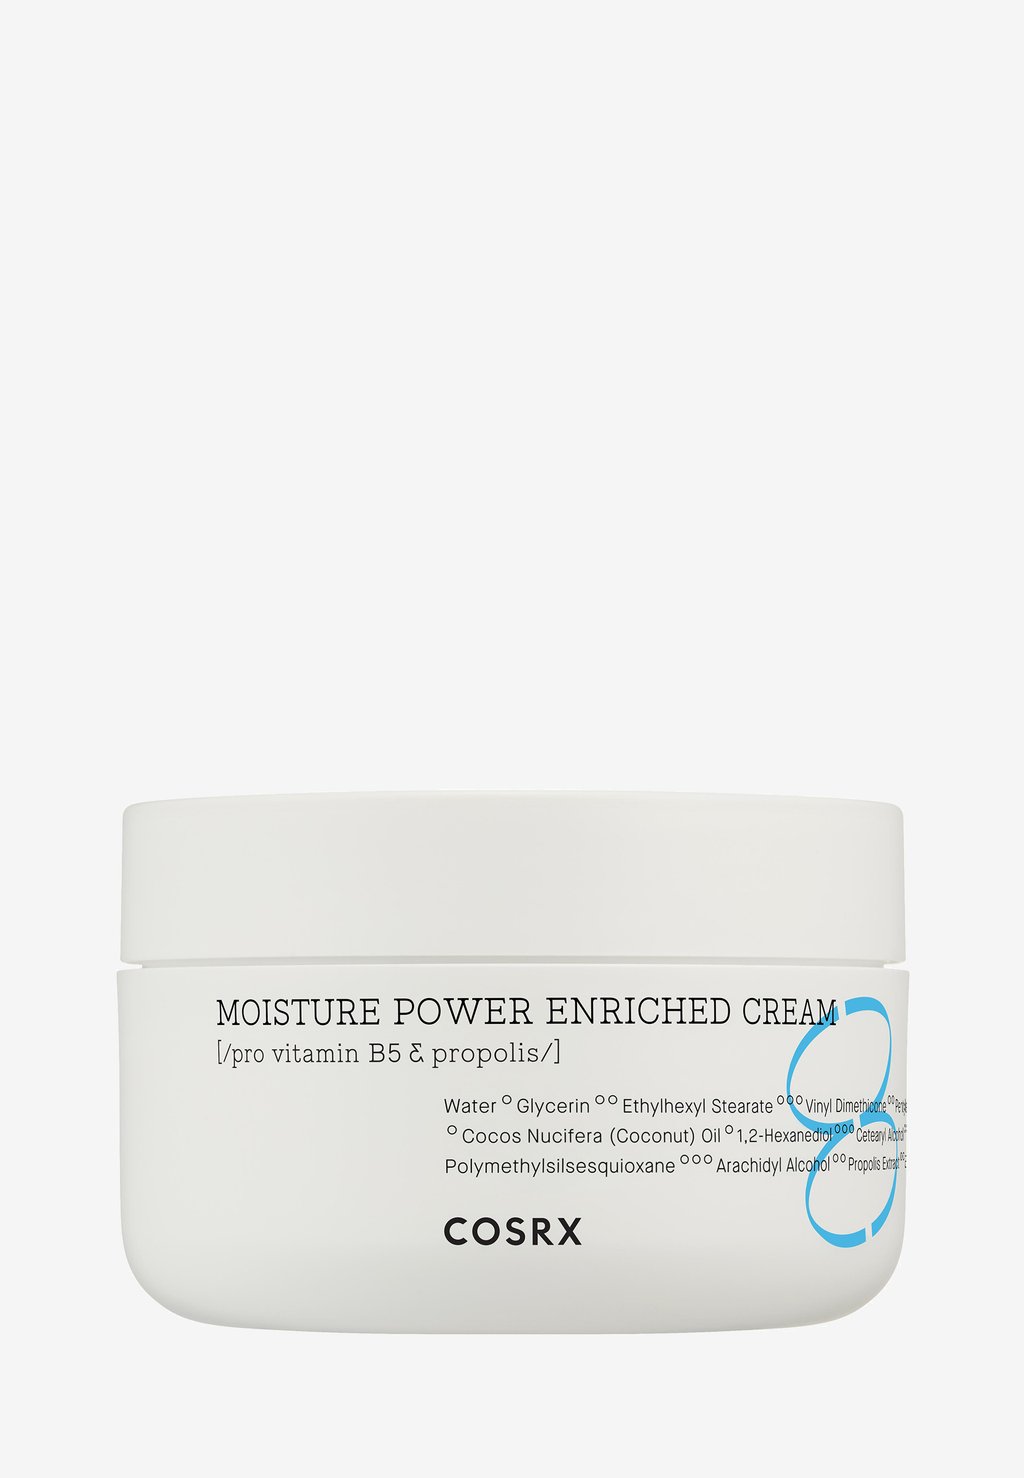 cosrx moisture power enriched cream крем для глубокого увлажнения кожи 50 мл Дневной крем Moisture Power Enriched Cream COSRX